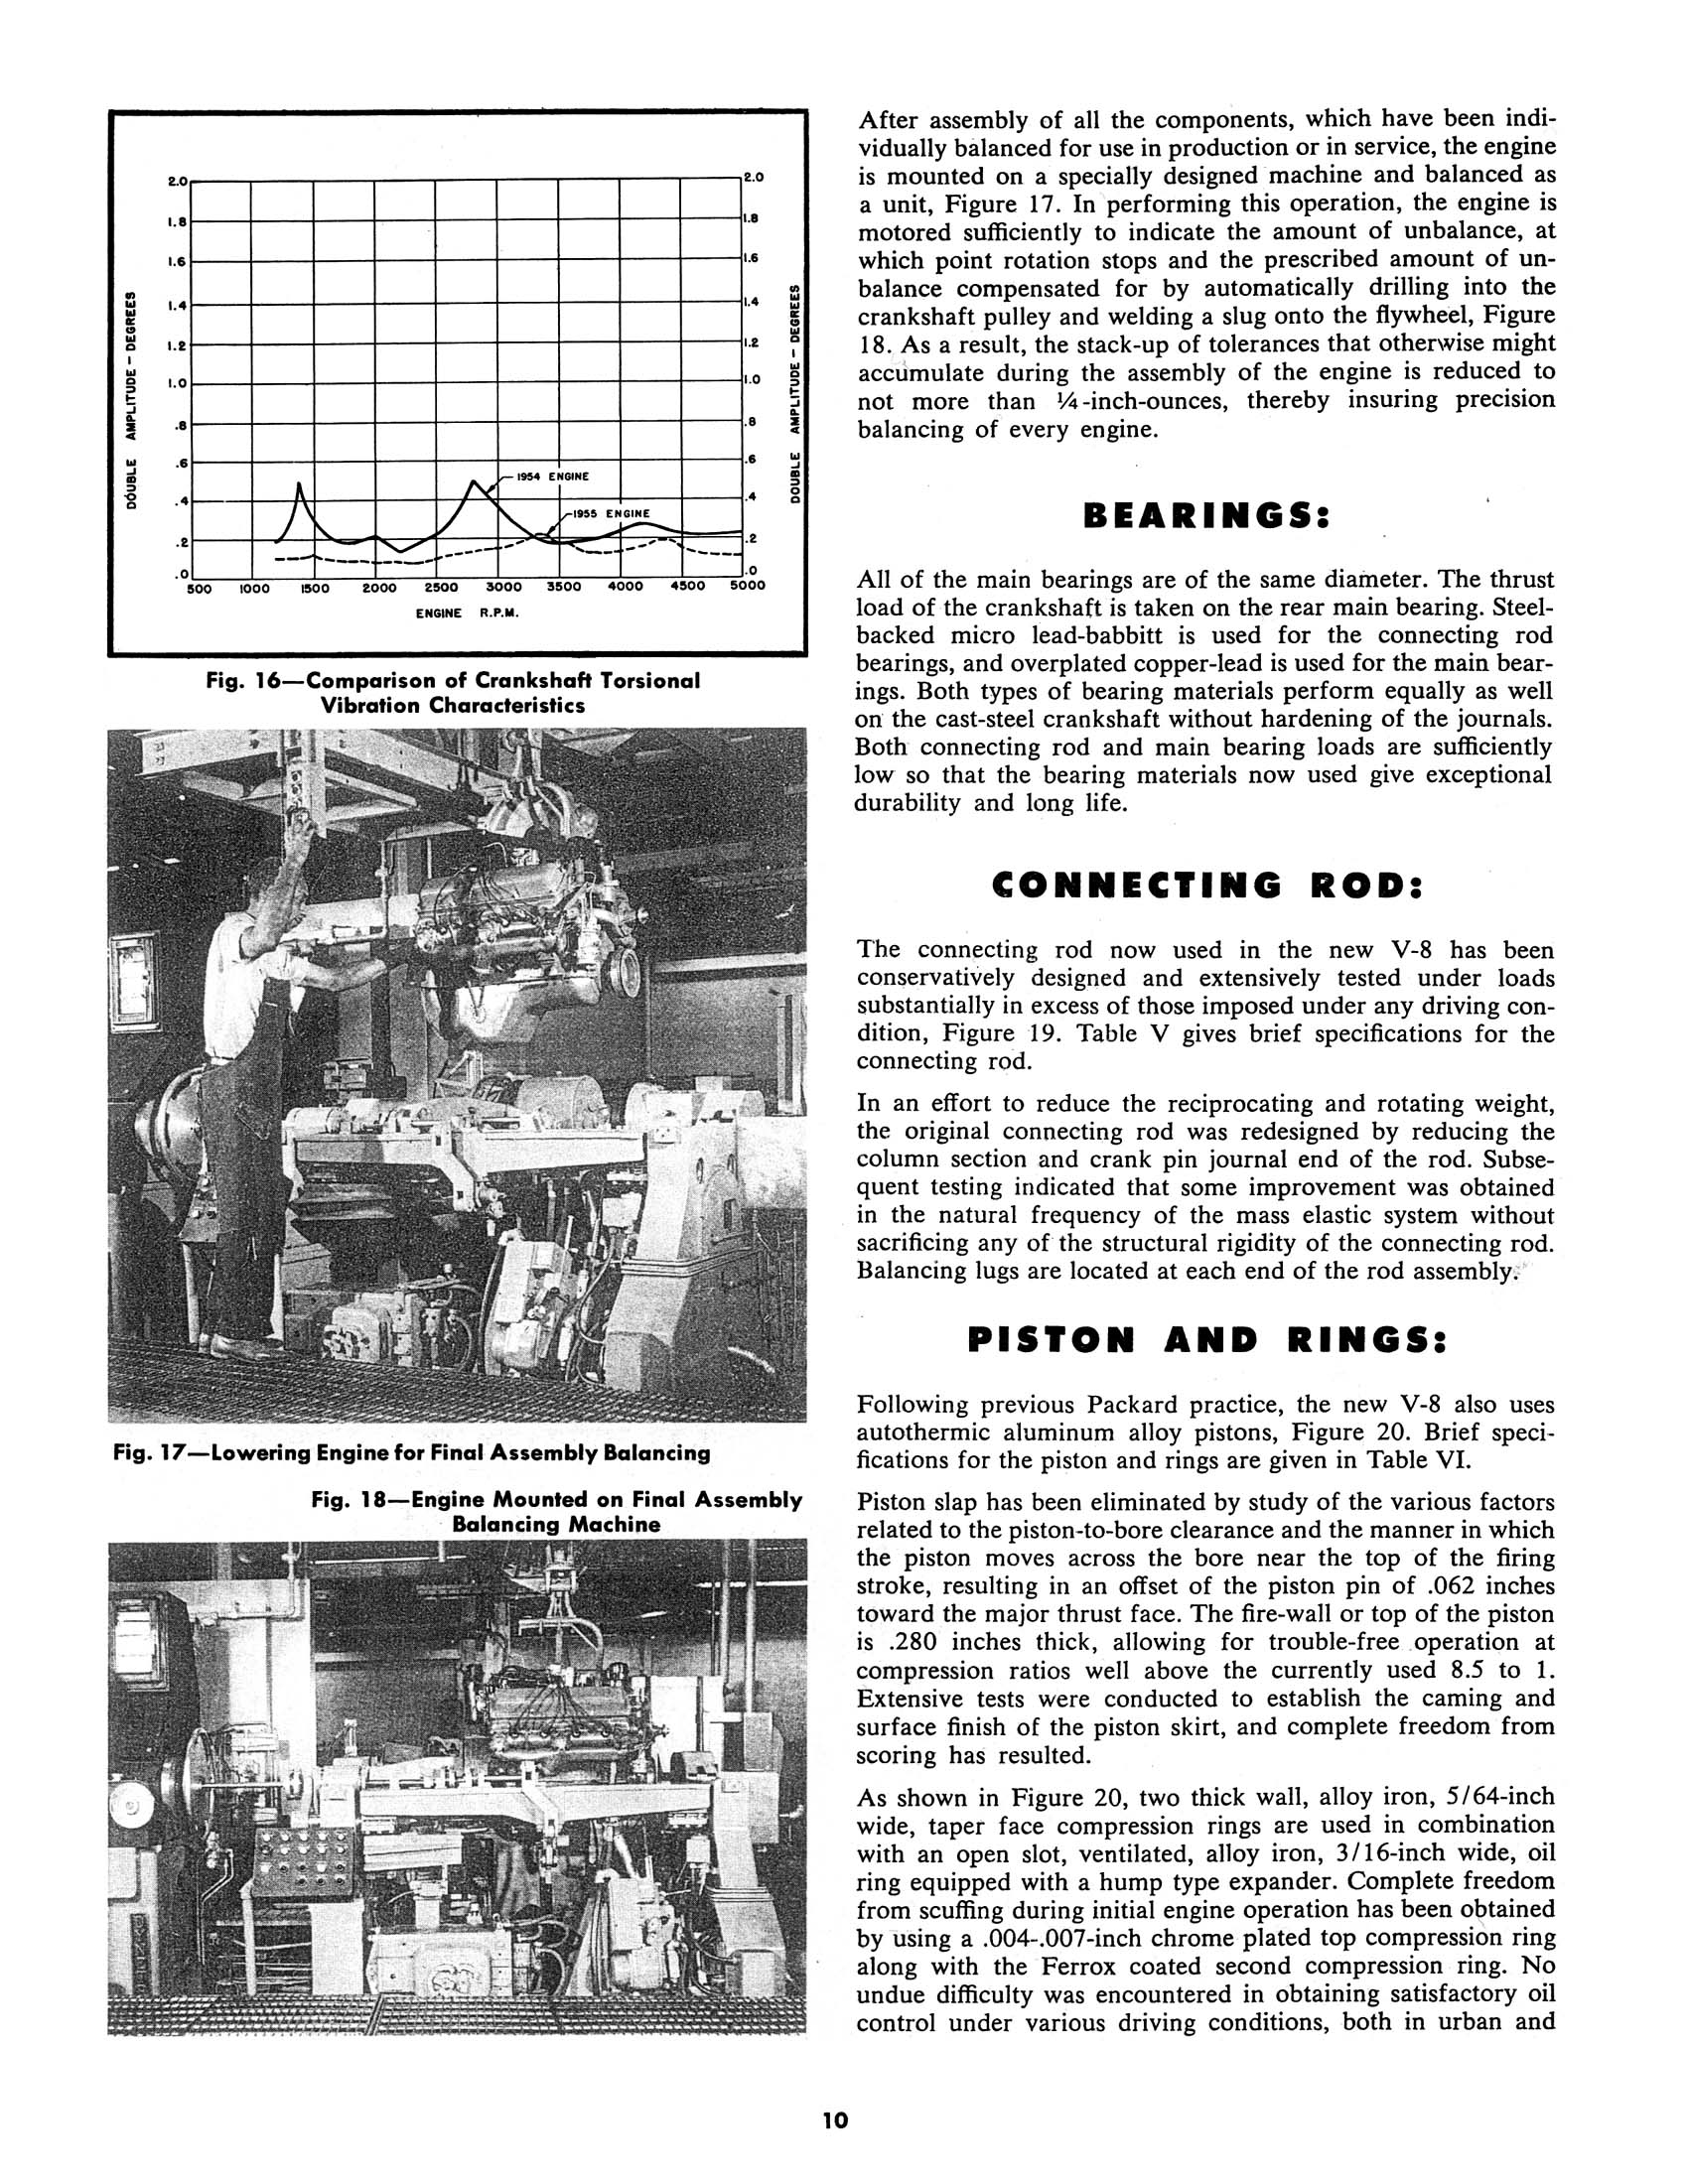 1955_Packard_V8_Engine-10